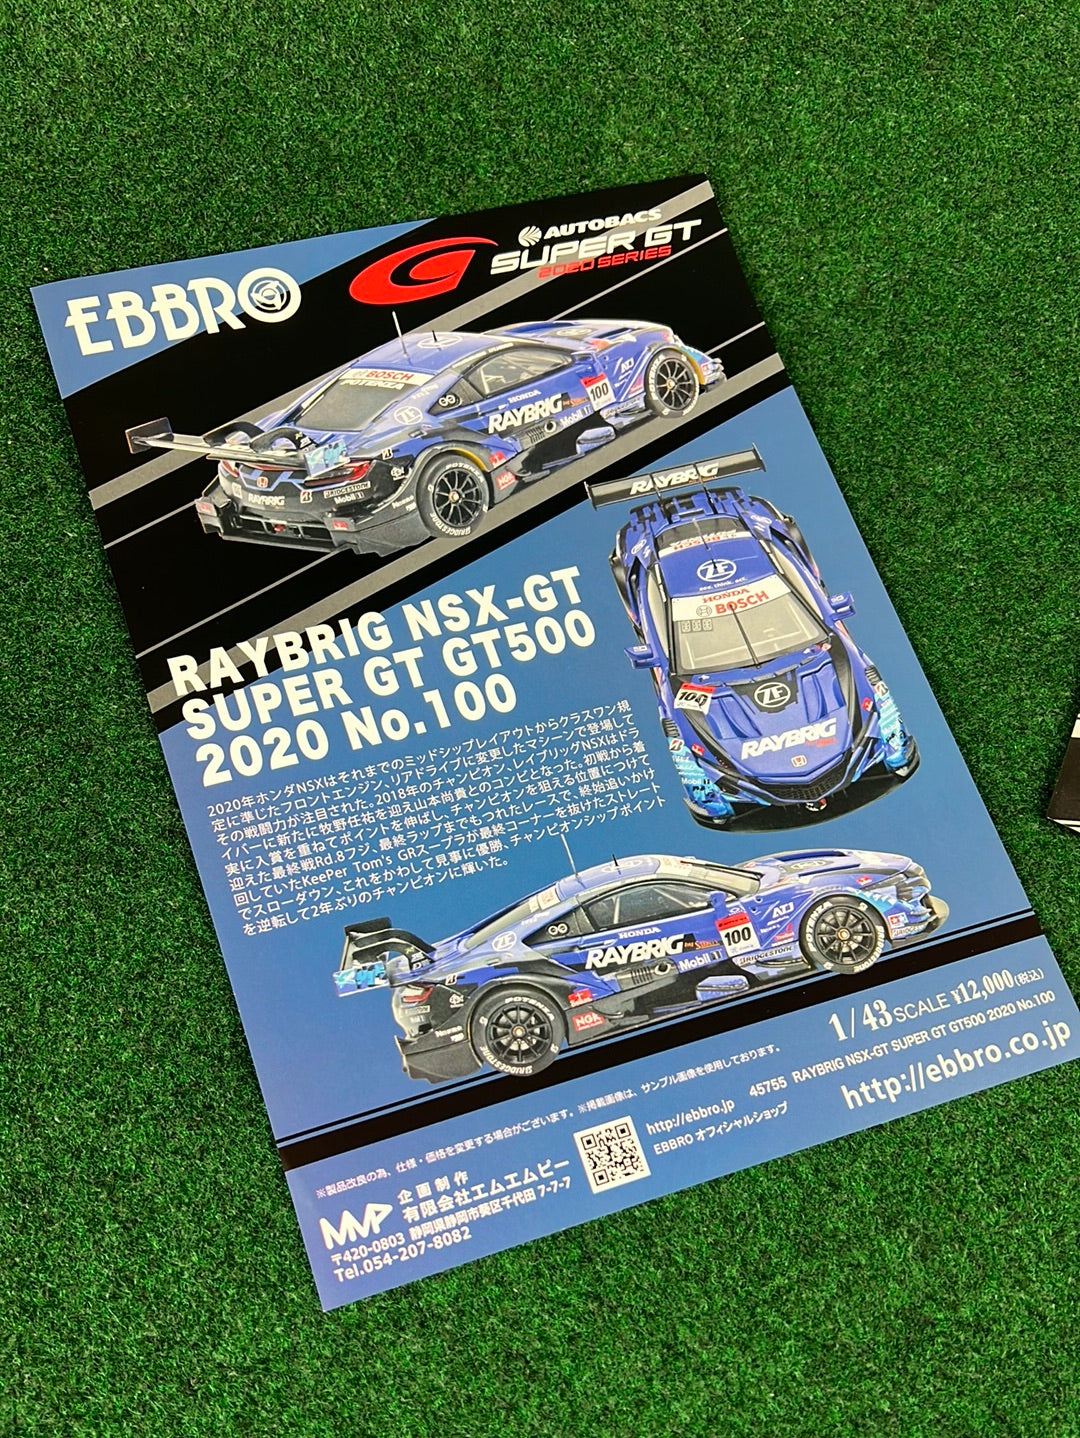 Ebbro RAYBRIG NSX-GT 2017 SUPER GT